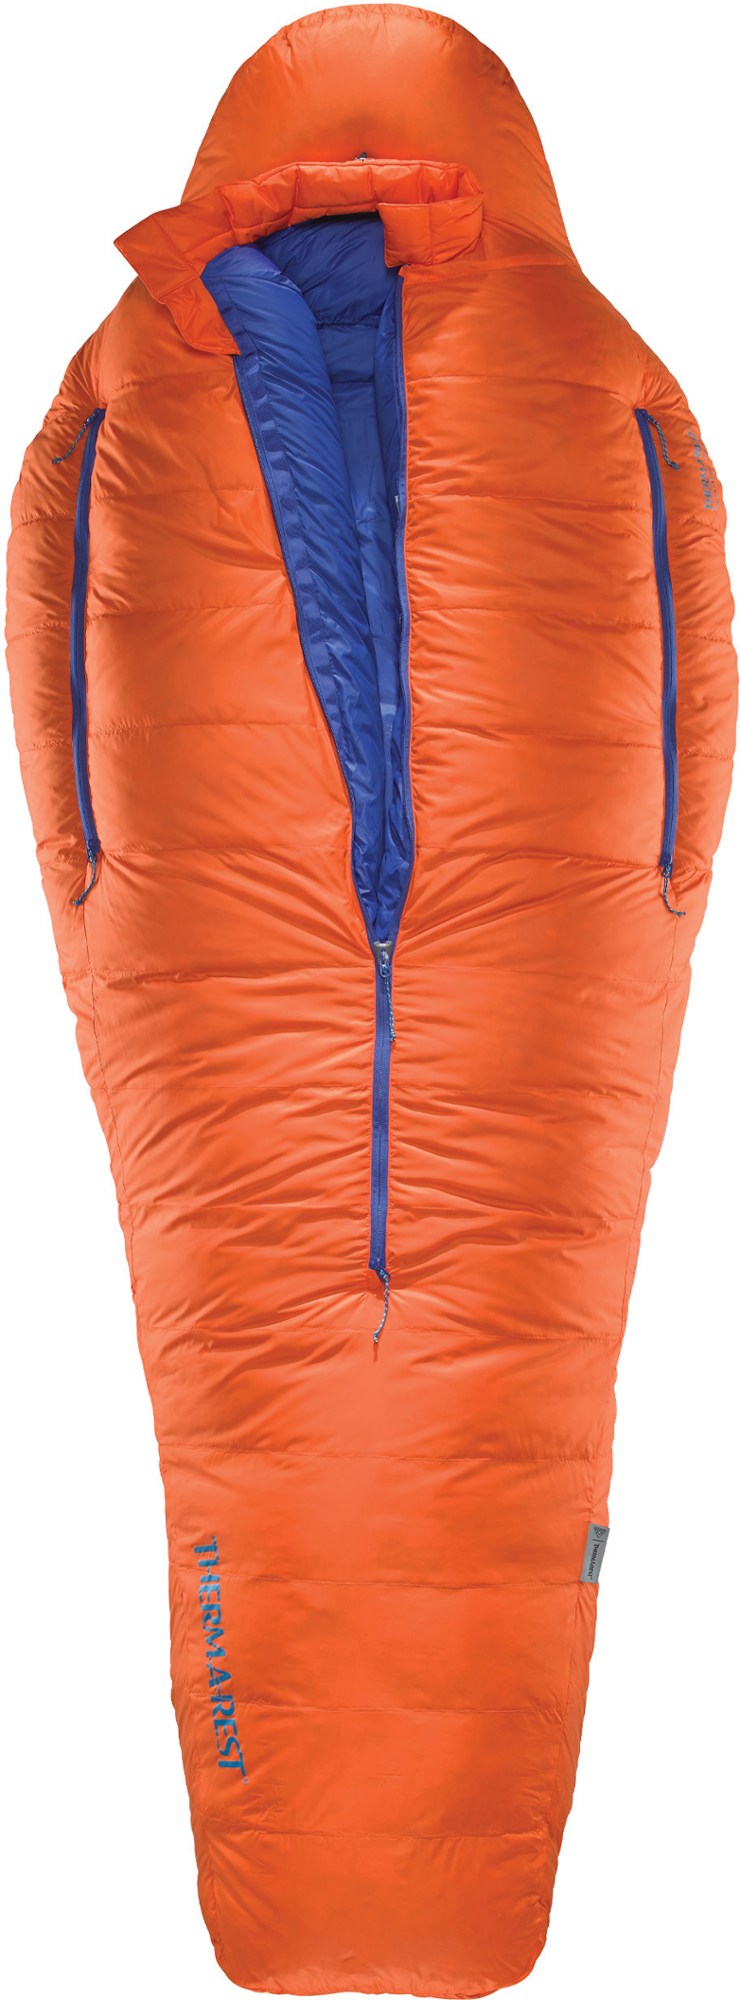 Спальный мешок Polar Ranger -20 Therm-a-Rest, оранжевый